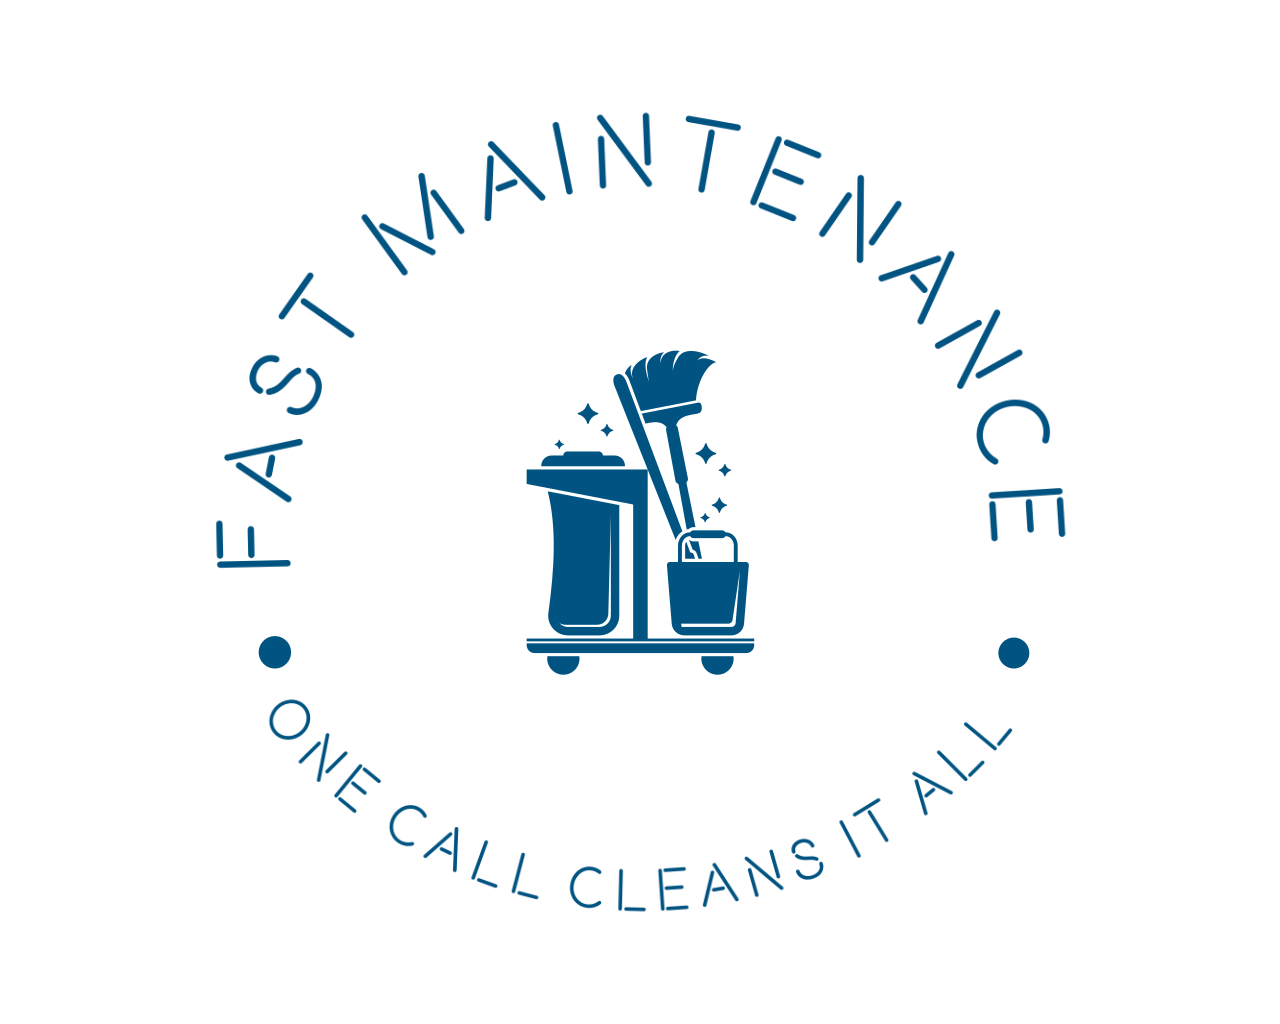 Fast Maintenance 's web page